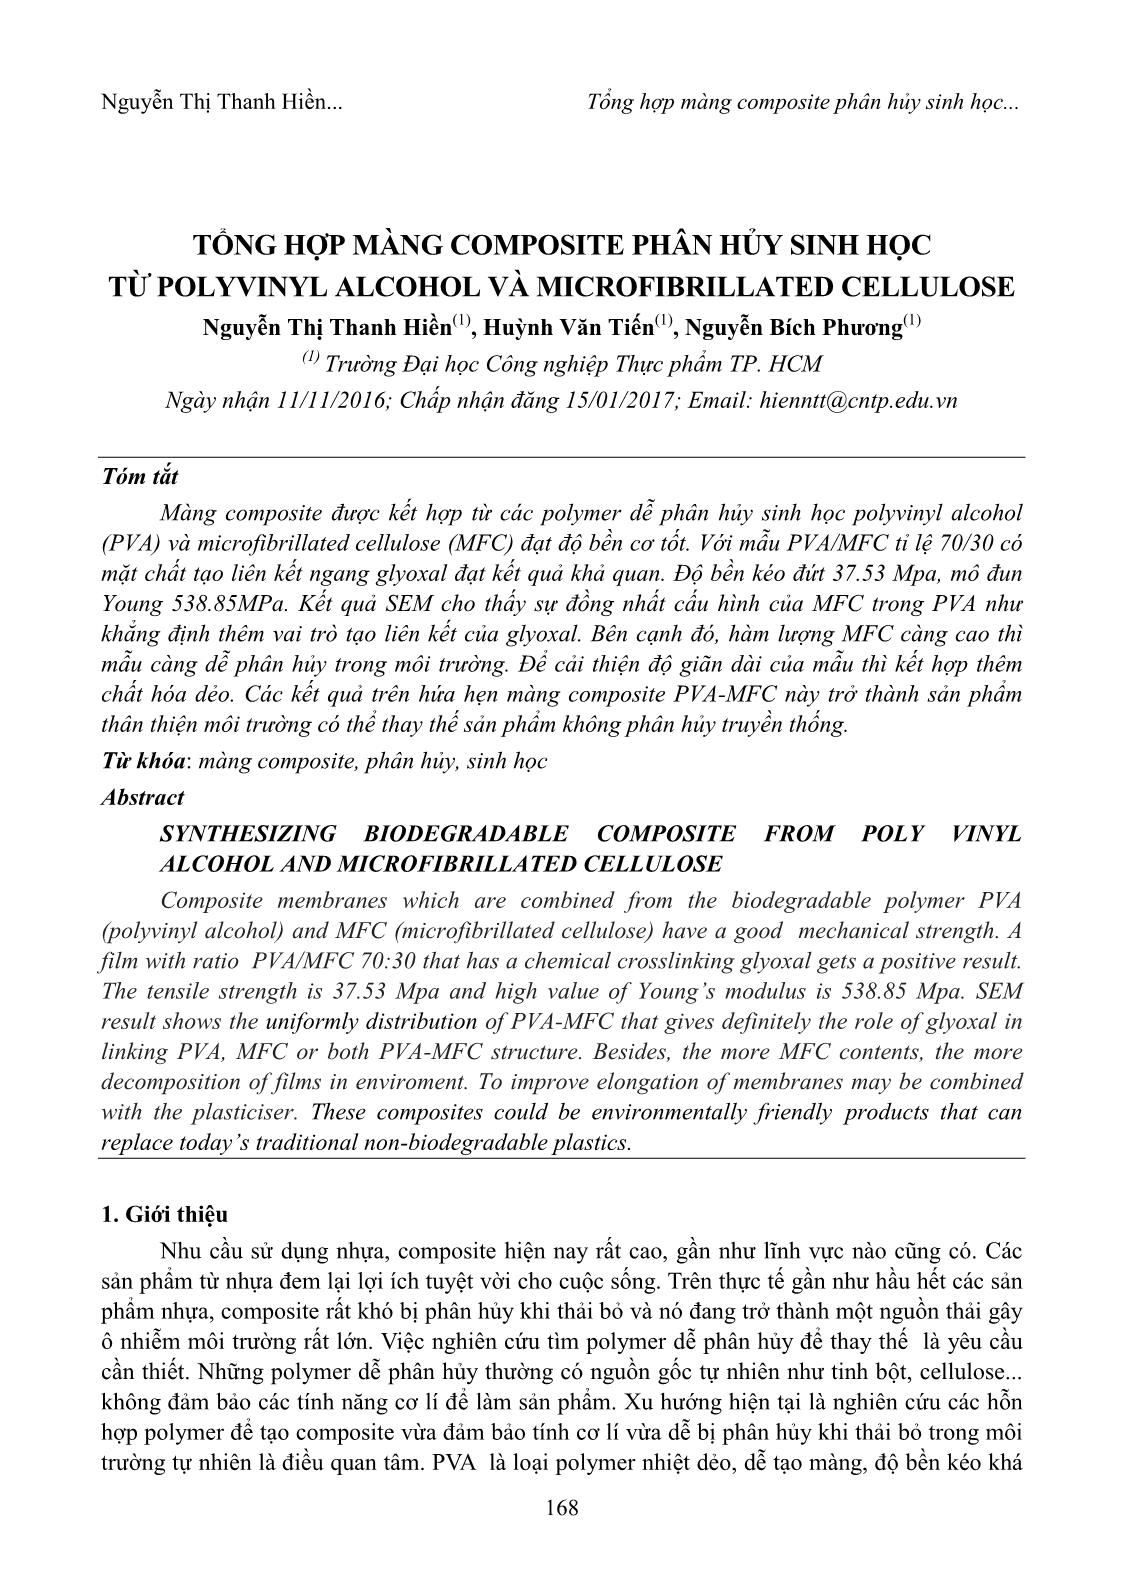 Tổng hợp màng Composite phân hủy sinh học từ Polyvinyl Alcohol và Microfibrillated Cellulose trang 1